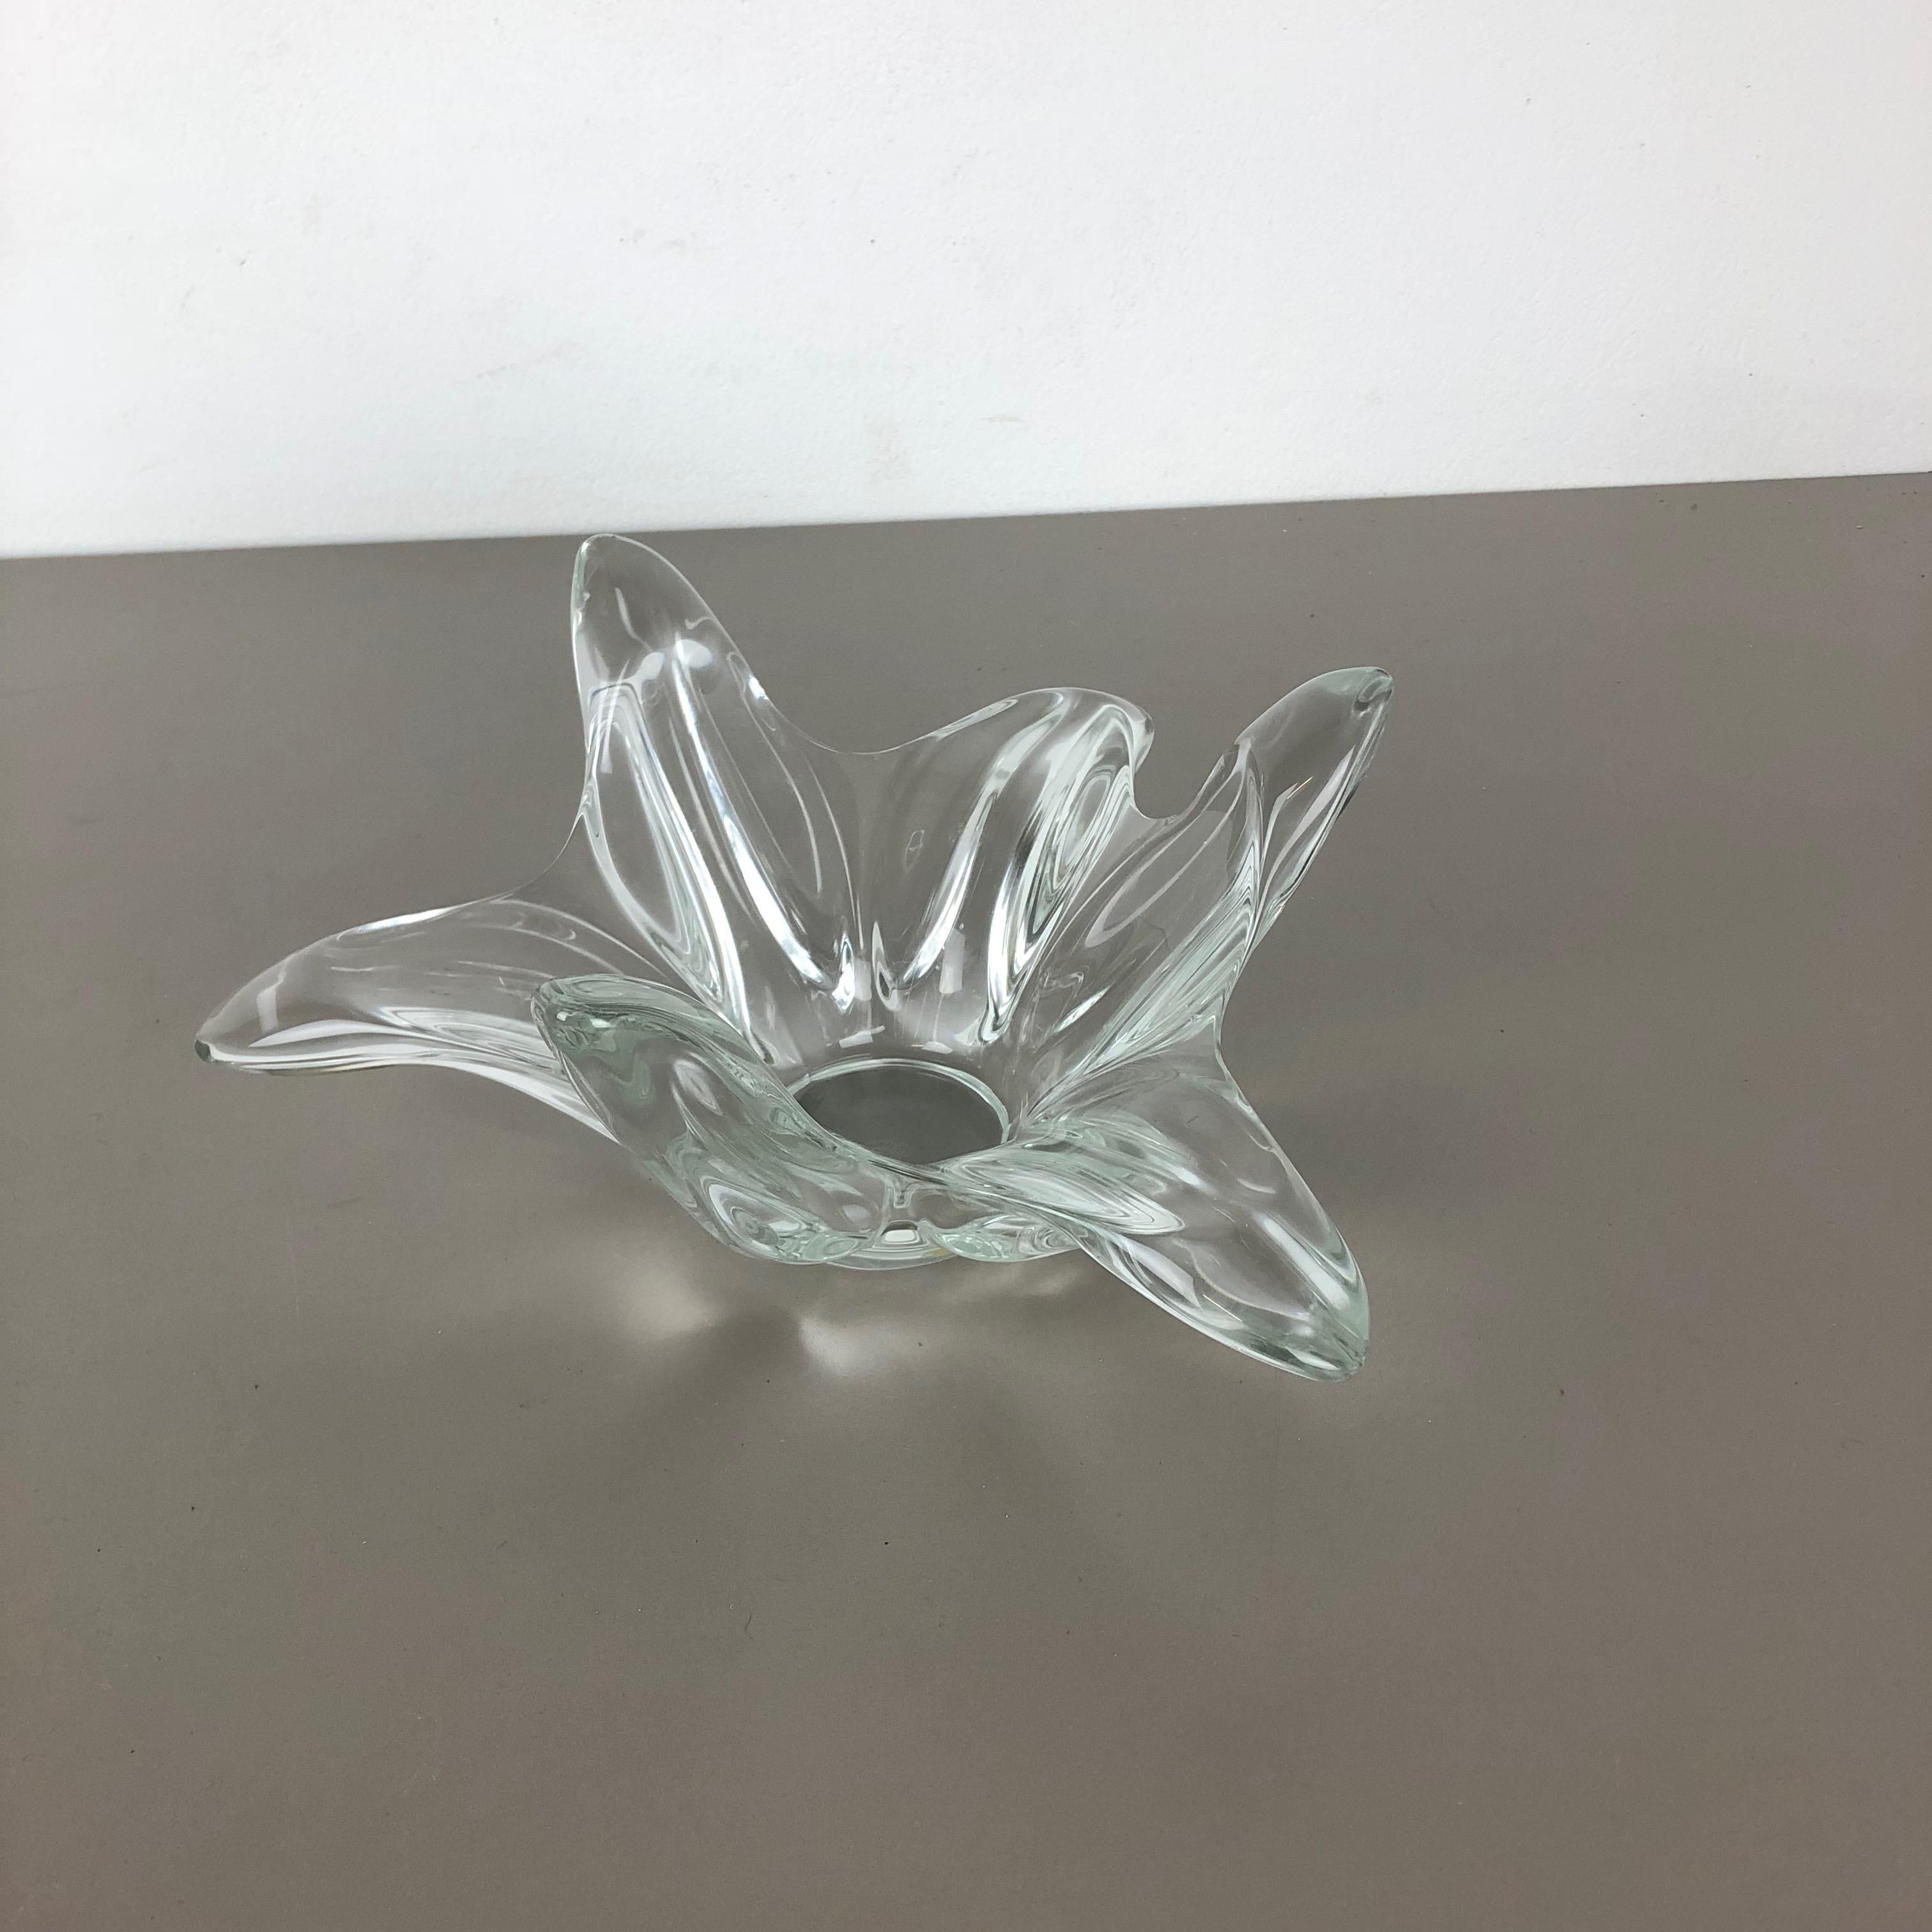 Artikel: Kristallglasschale 



Produzent: ART VANNES FRANCE (markiert)



Alter: 1970er Jahre



Wunderschönes schweres Glaselement, entworfen und hergestellt von ART VANNES in Frankreich in den 1970er Jahren. Diese Glasschale ist eine